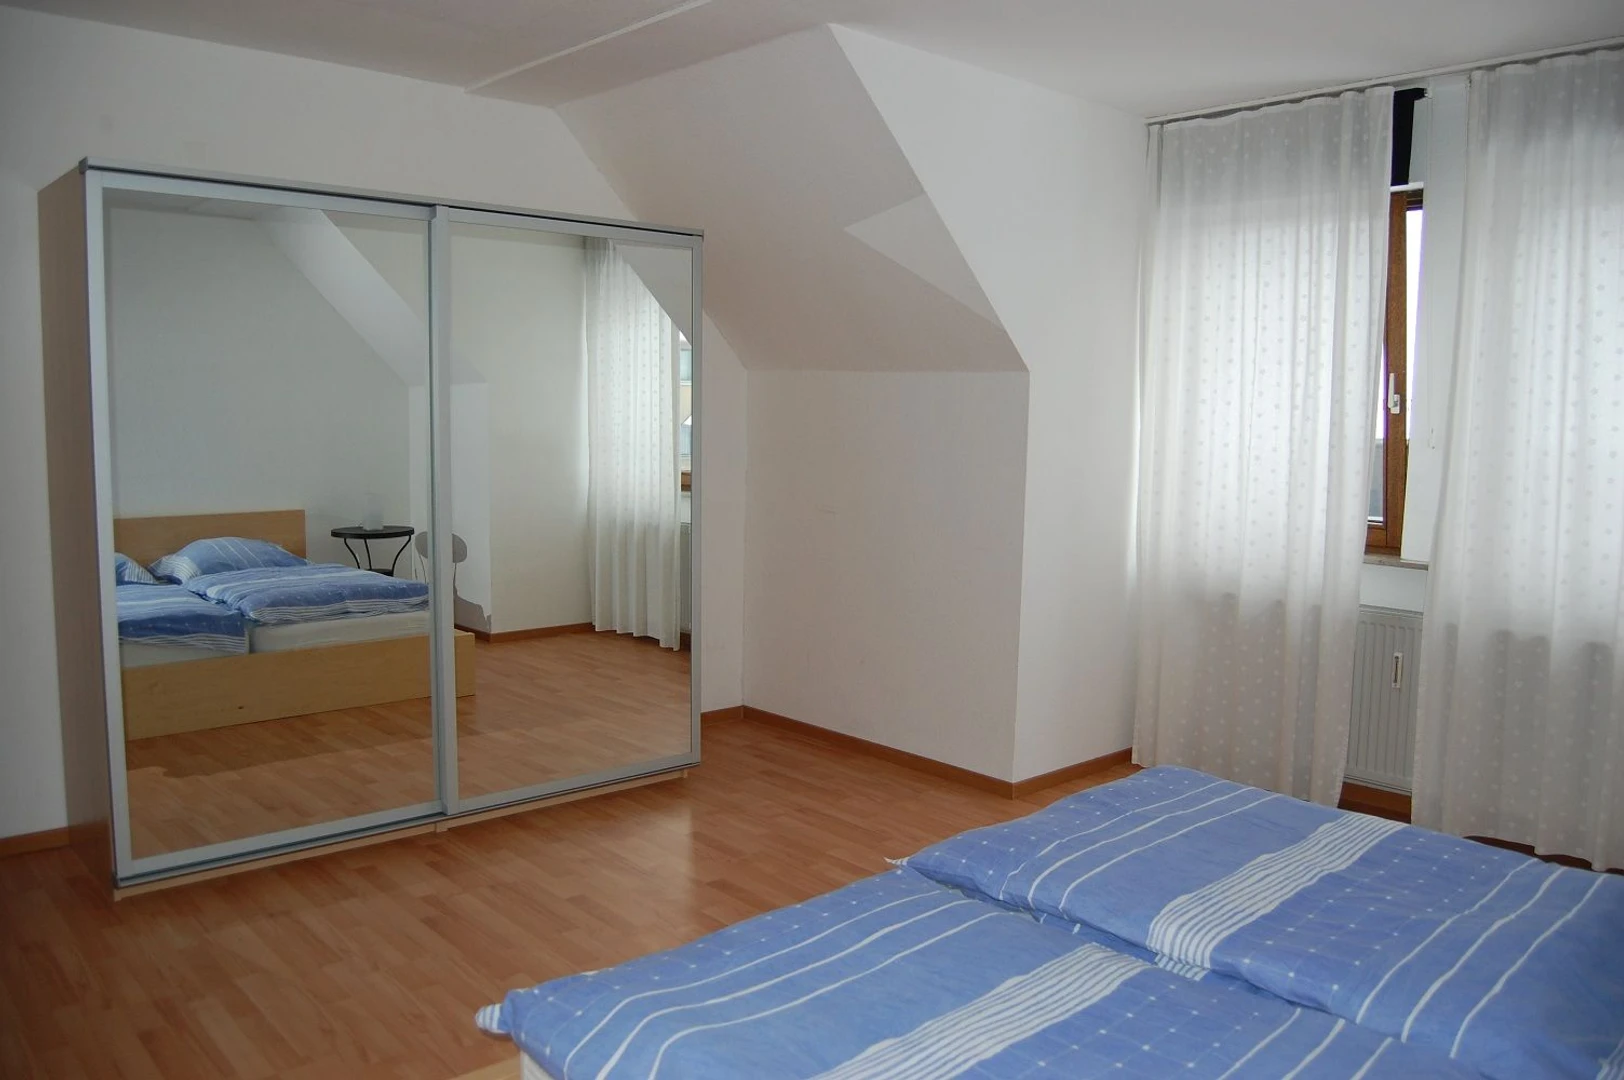 Zimmer zur Miete in einer WG in Erlangen